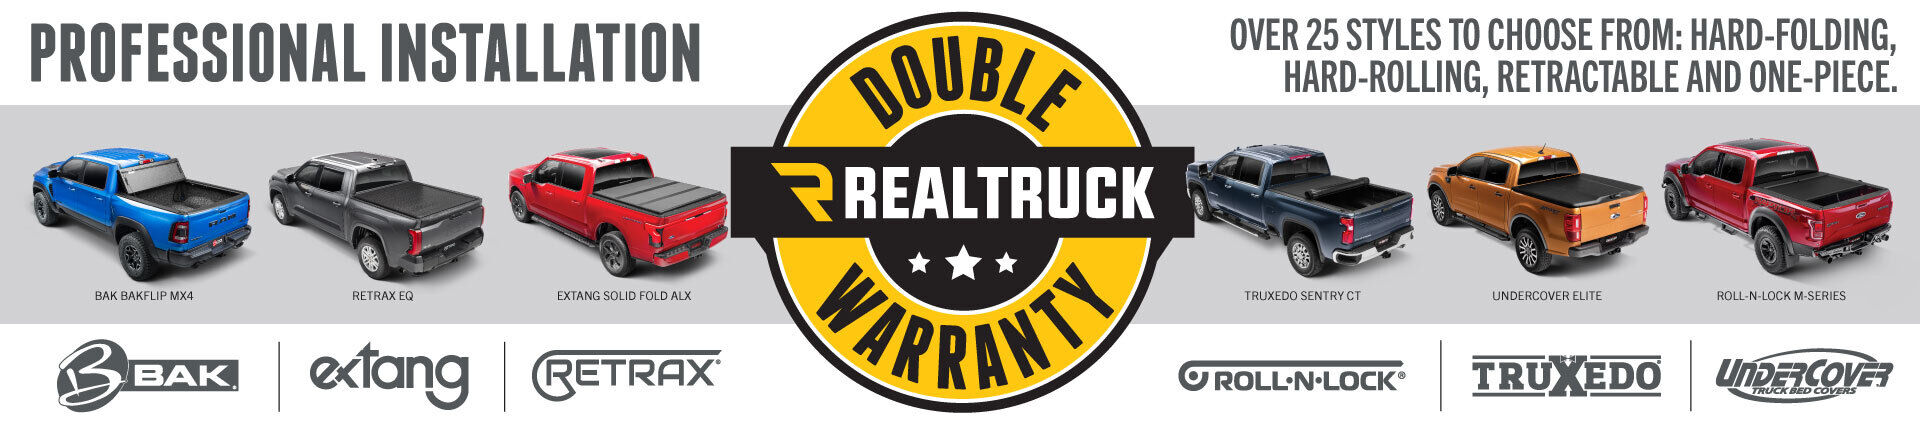 RealTruck Double Warranty